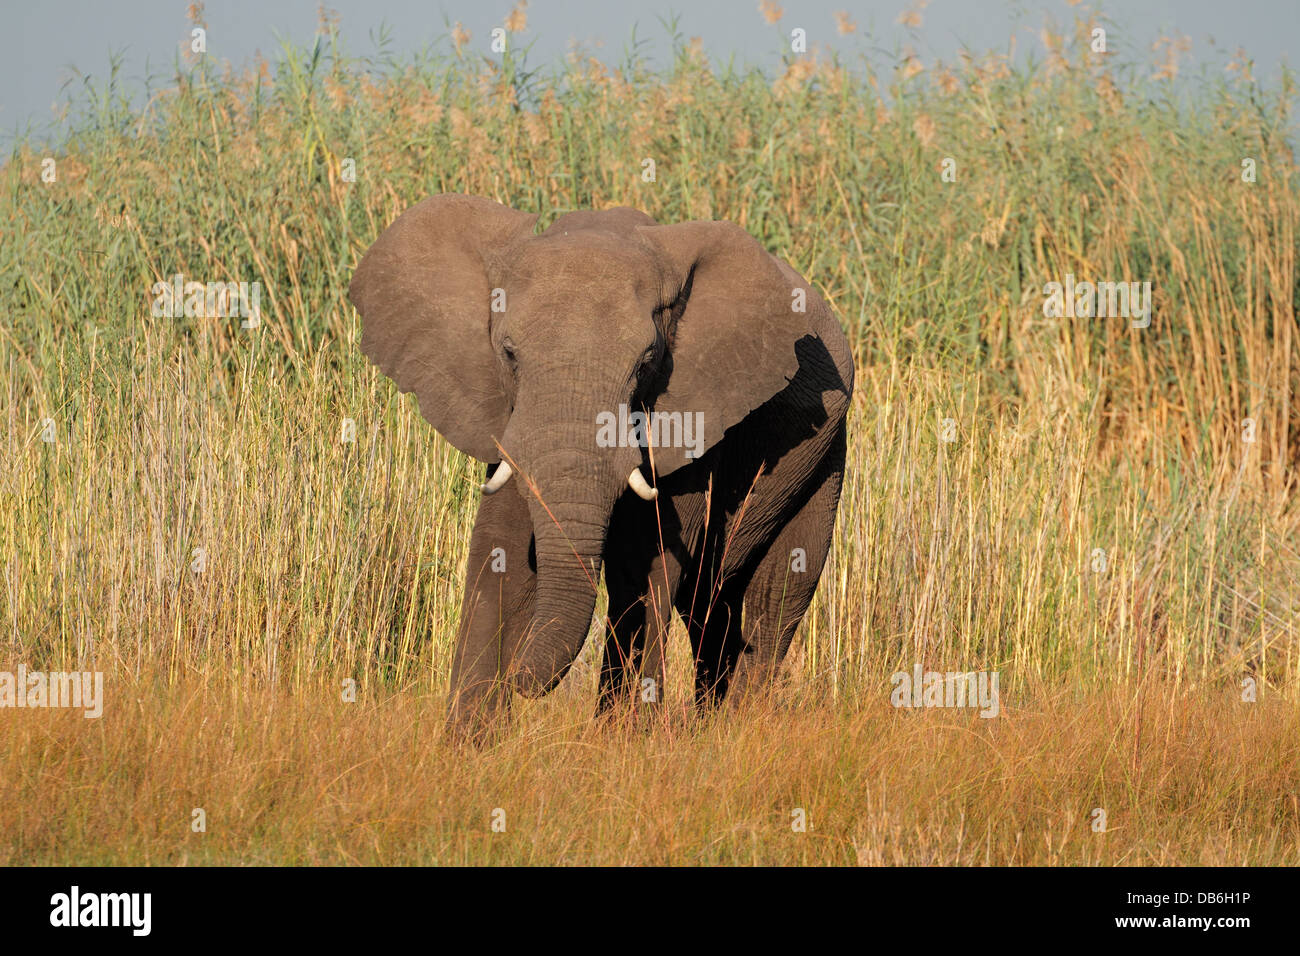 Gran Toro elefante africano (Loxodonta africana), la región de Caprivi, Namibia Foto de stock